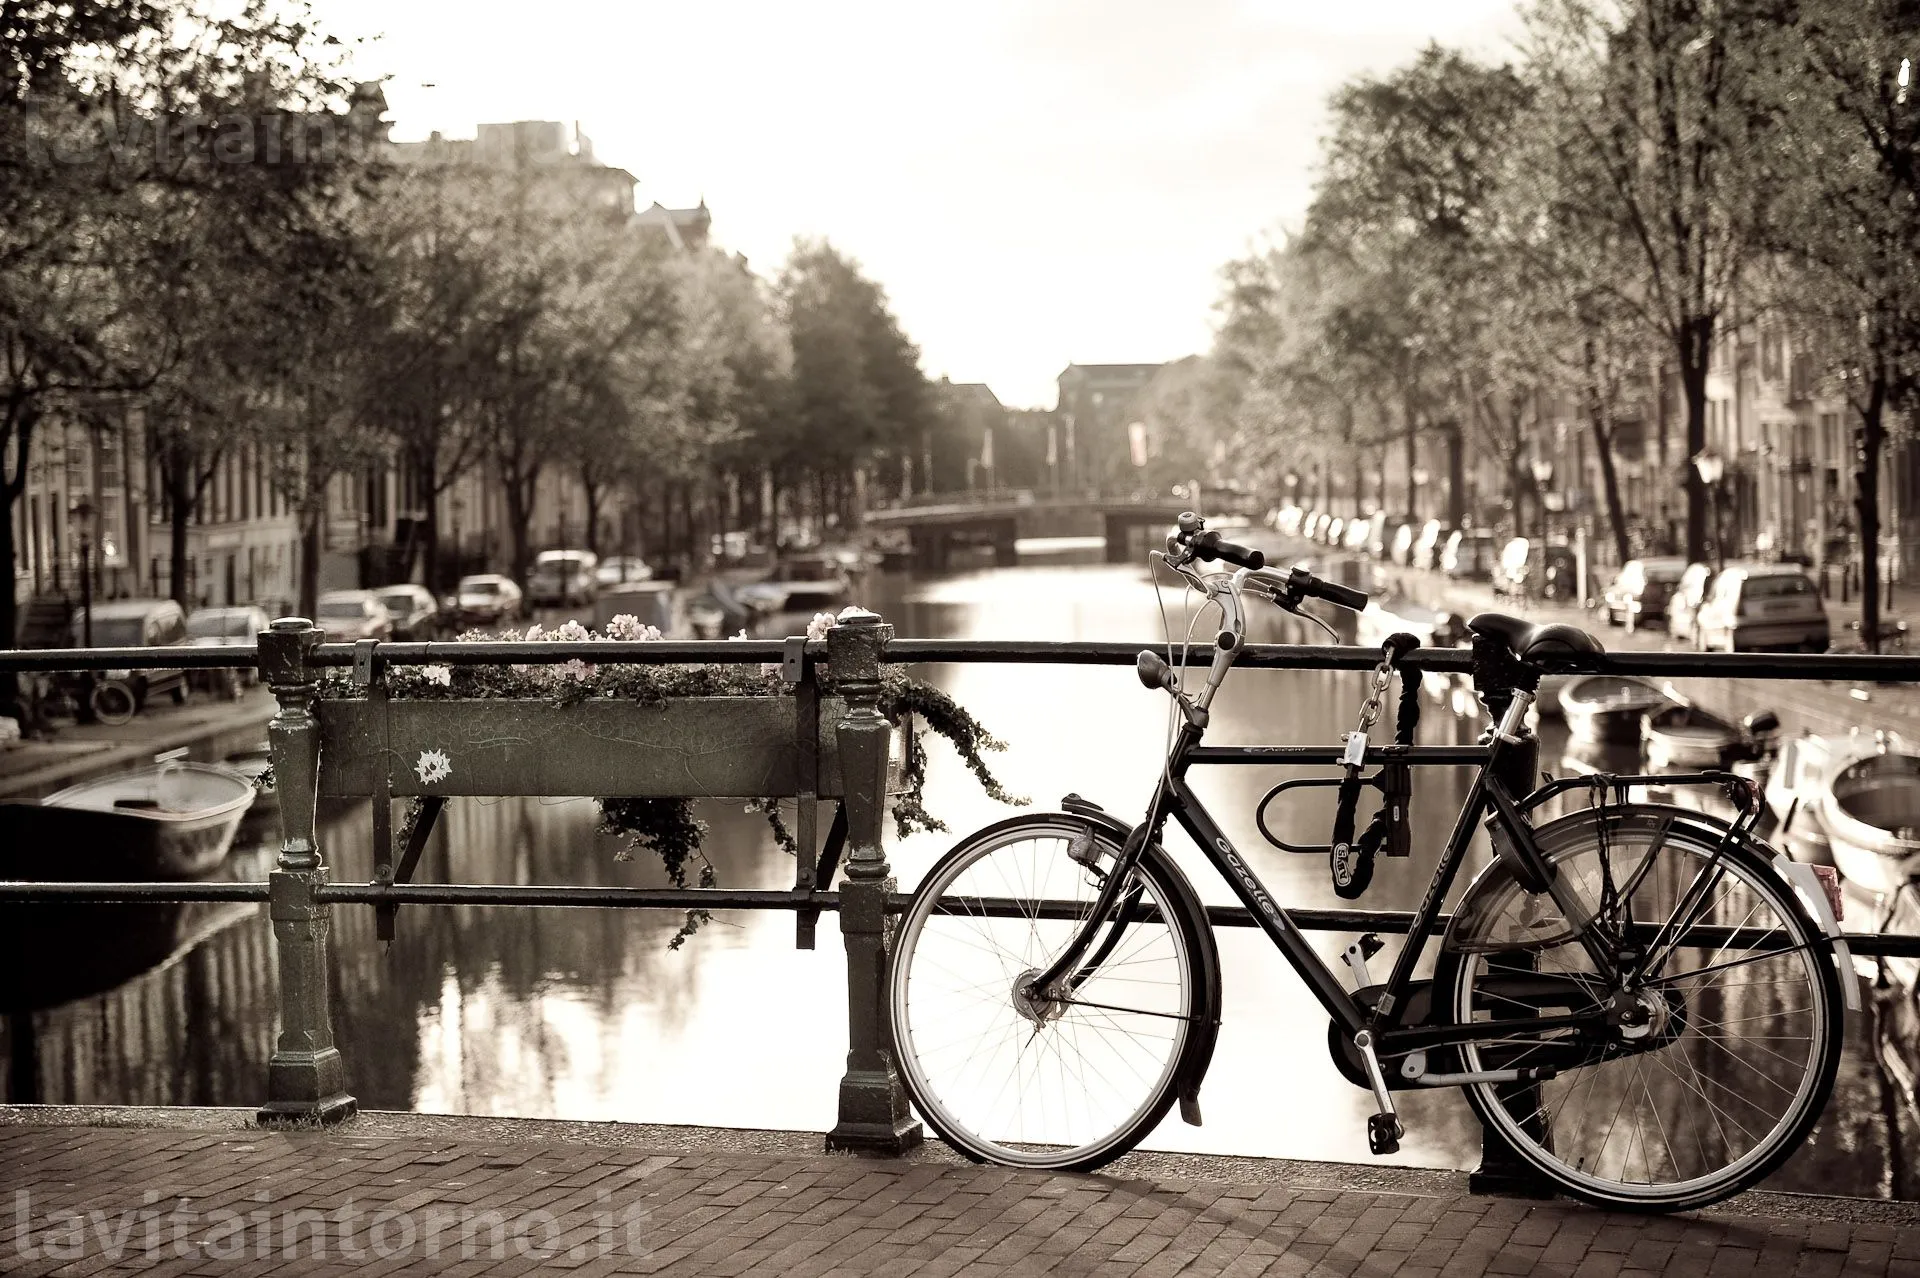 Amsterdam: bike on the bridge #4
D700
Nikkor 24-70 F/2.8G AF-S